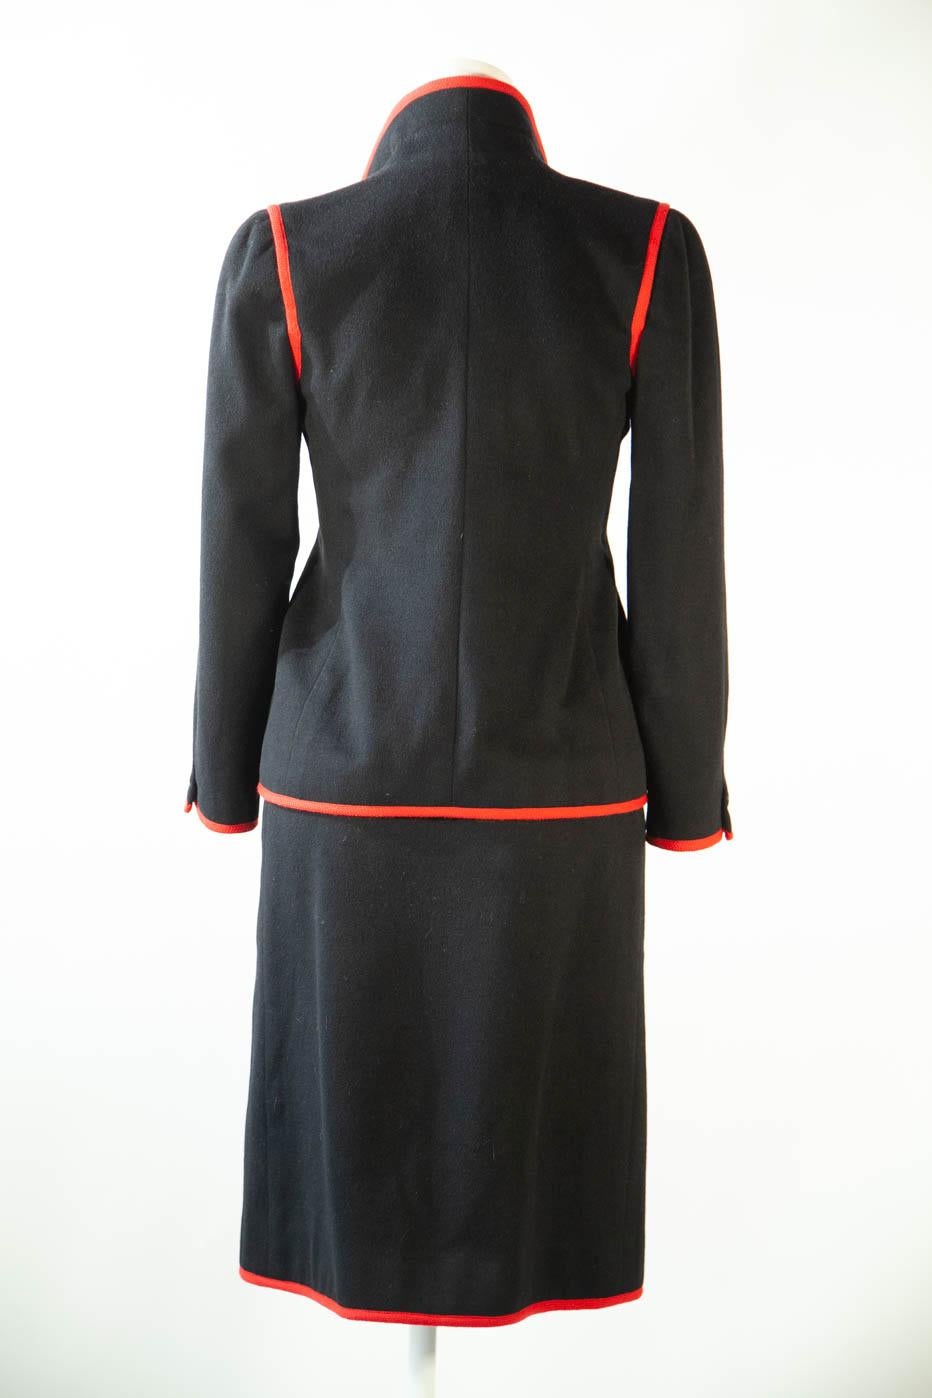 Women's Nina Ricci black ensemble  For Sale